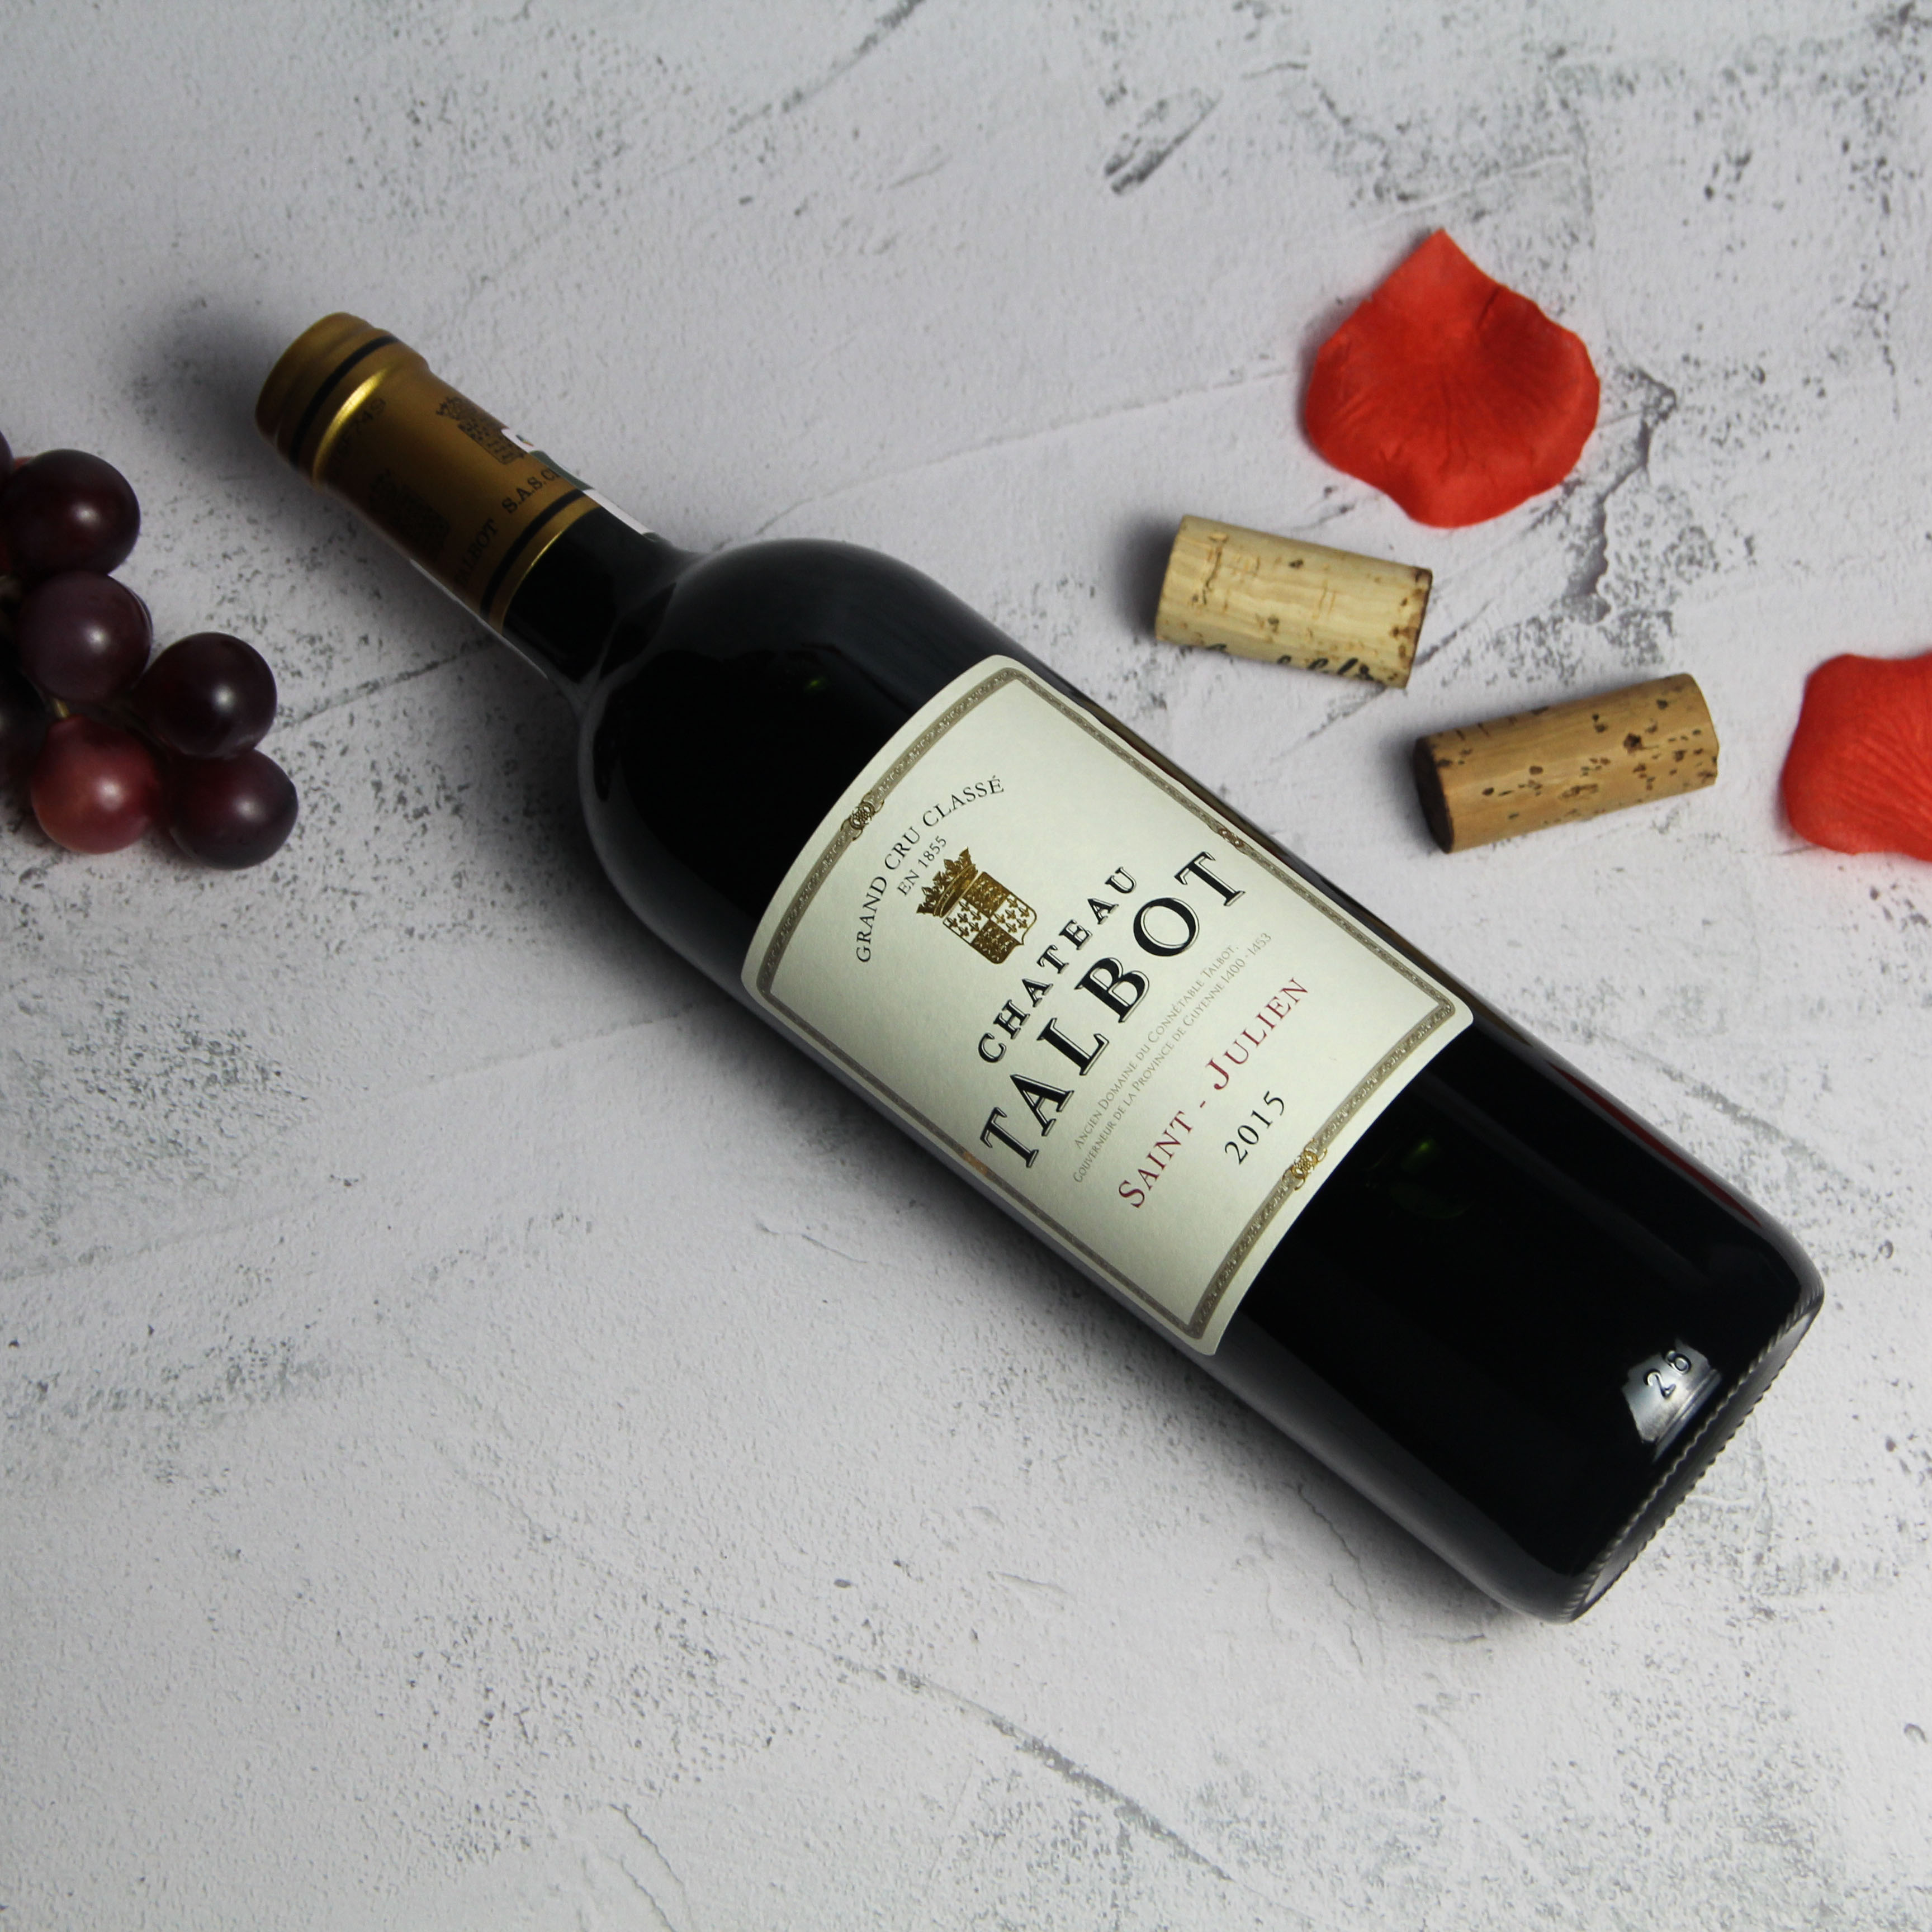 法国波尔多圣朱利安大宝酒庄红葡萄酒红酒2015